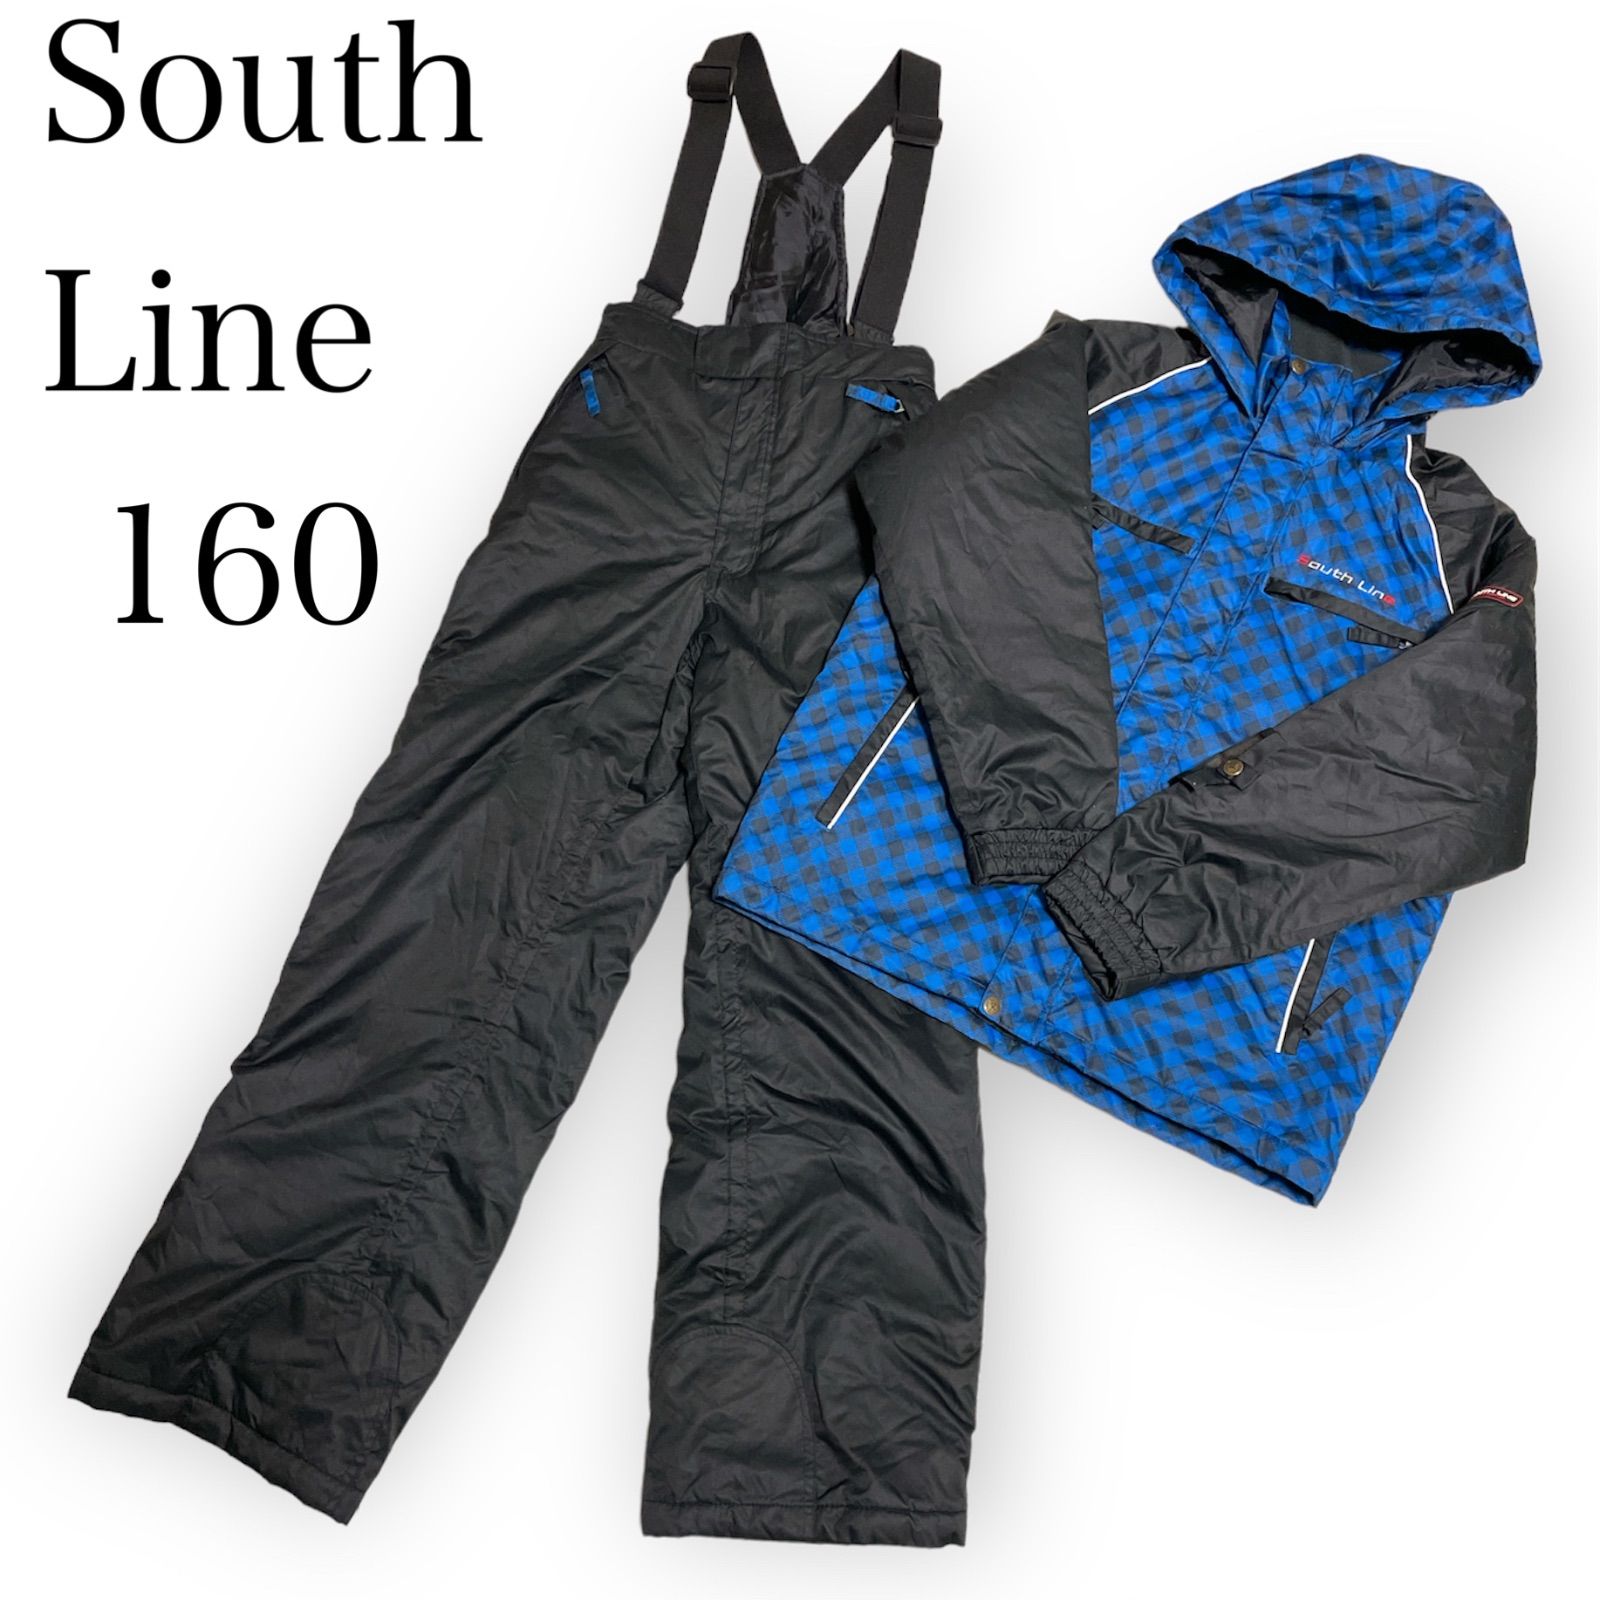 受注生産品 - 印象のデザイン SOUTH LINE ウェア スキーウェア スノボ 